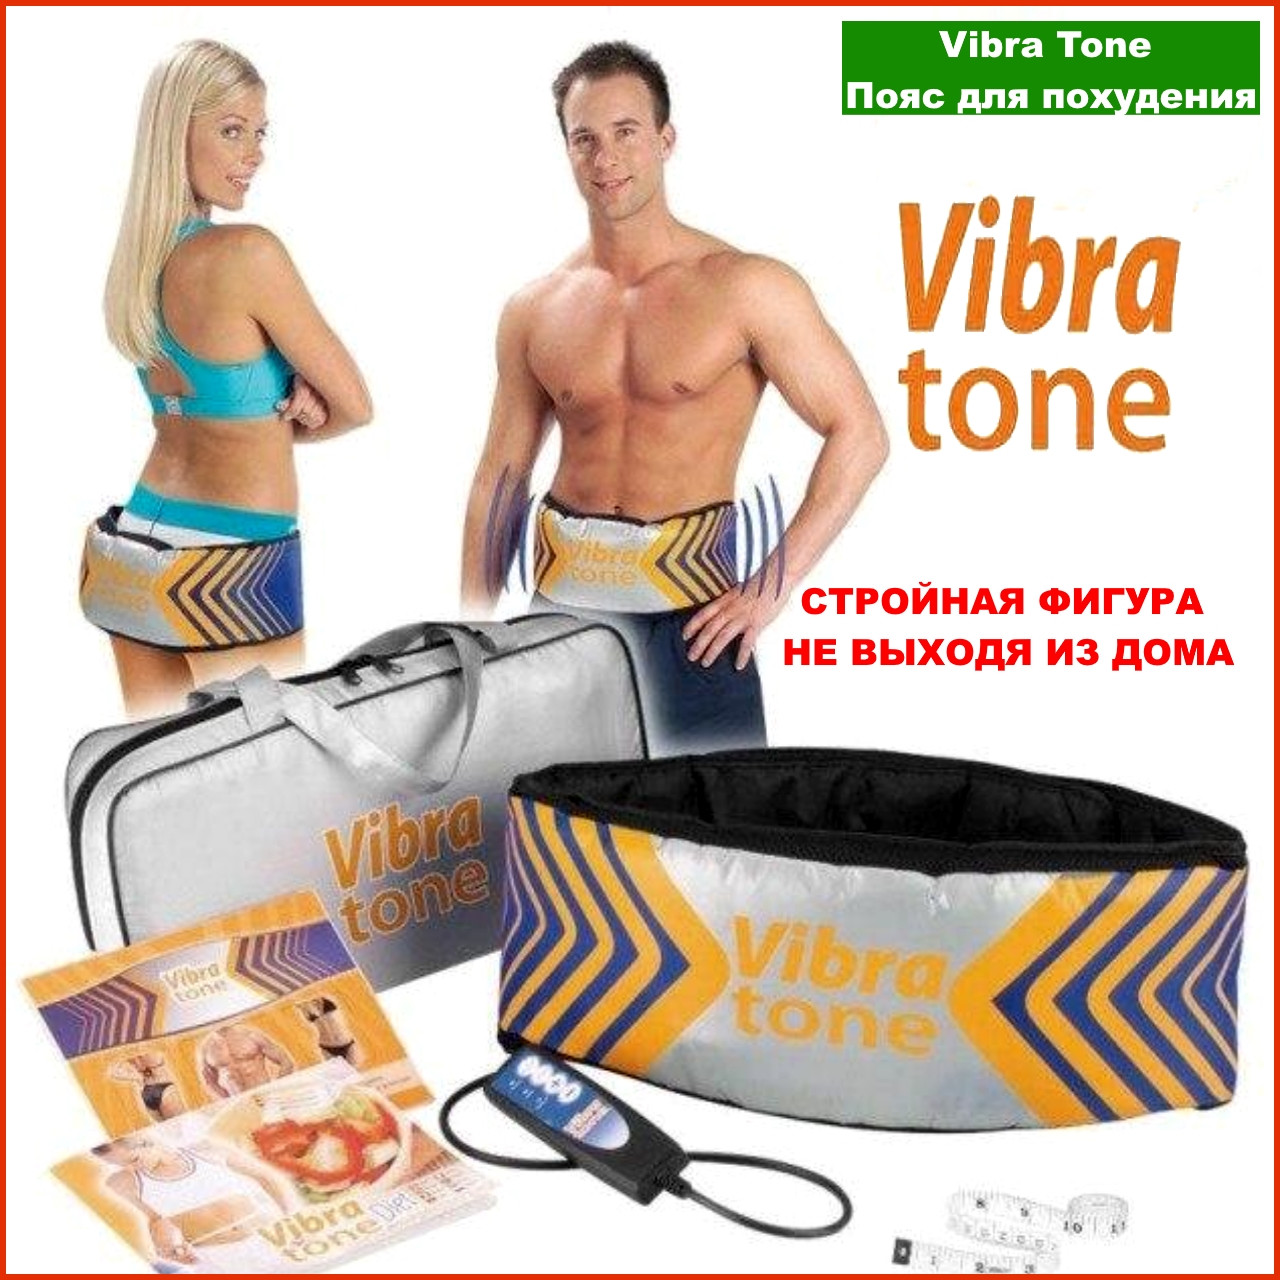 Vibra tone пояс. Vibra Tone пояс для похудения отзывы. Vibra Tone пояс для похудения инструкция по применению. Вибратон помогает убрать живот отзывы.